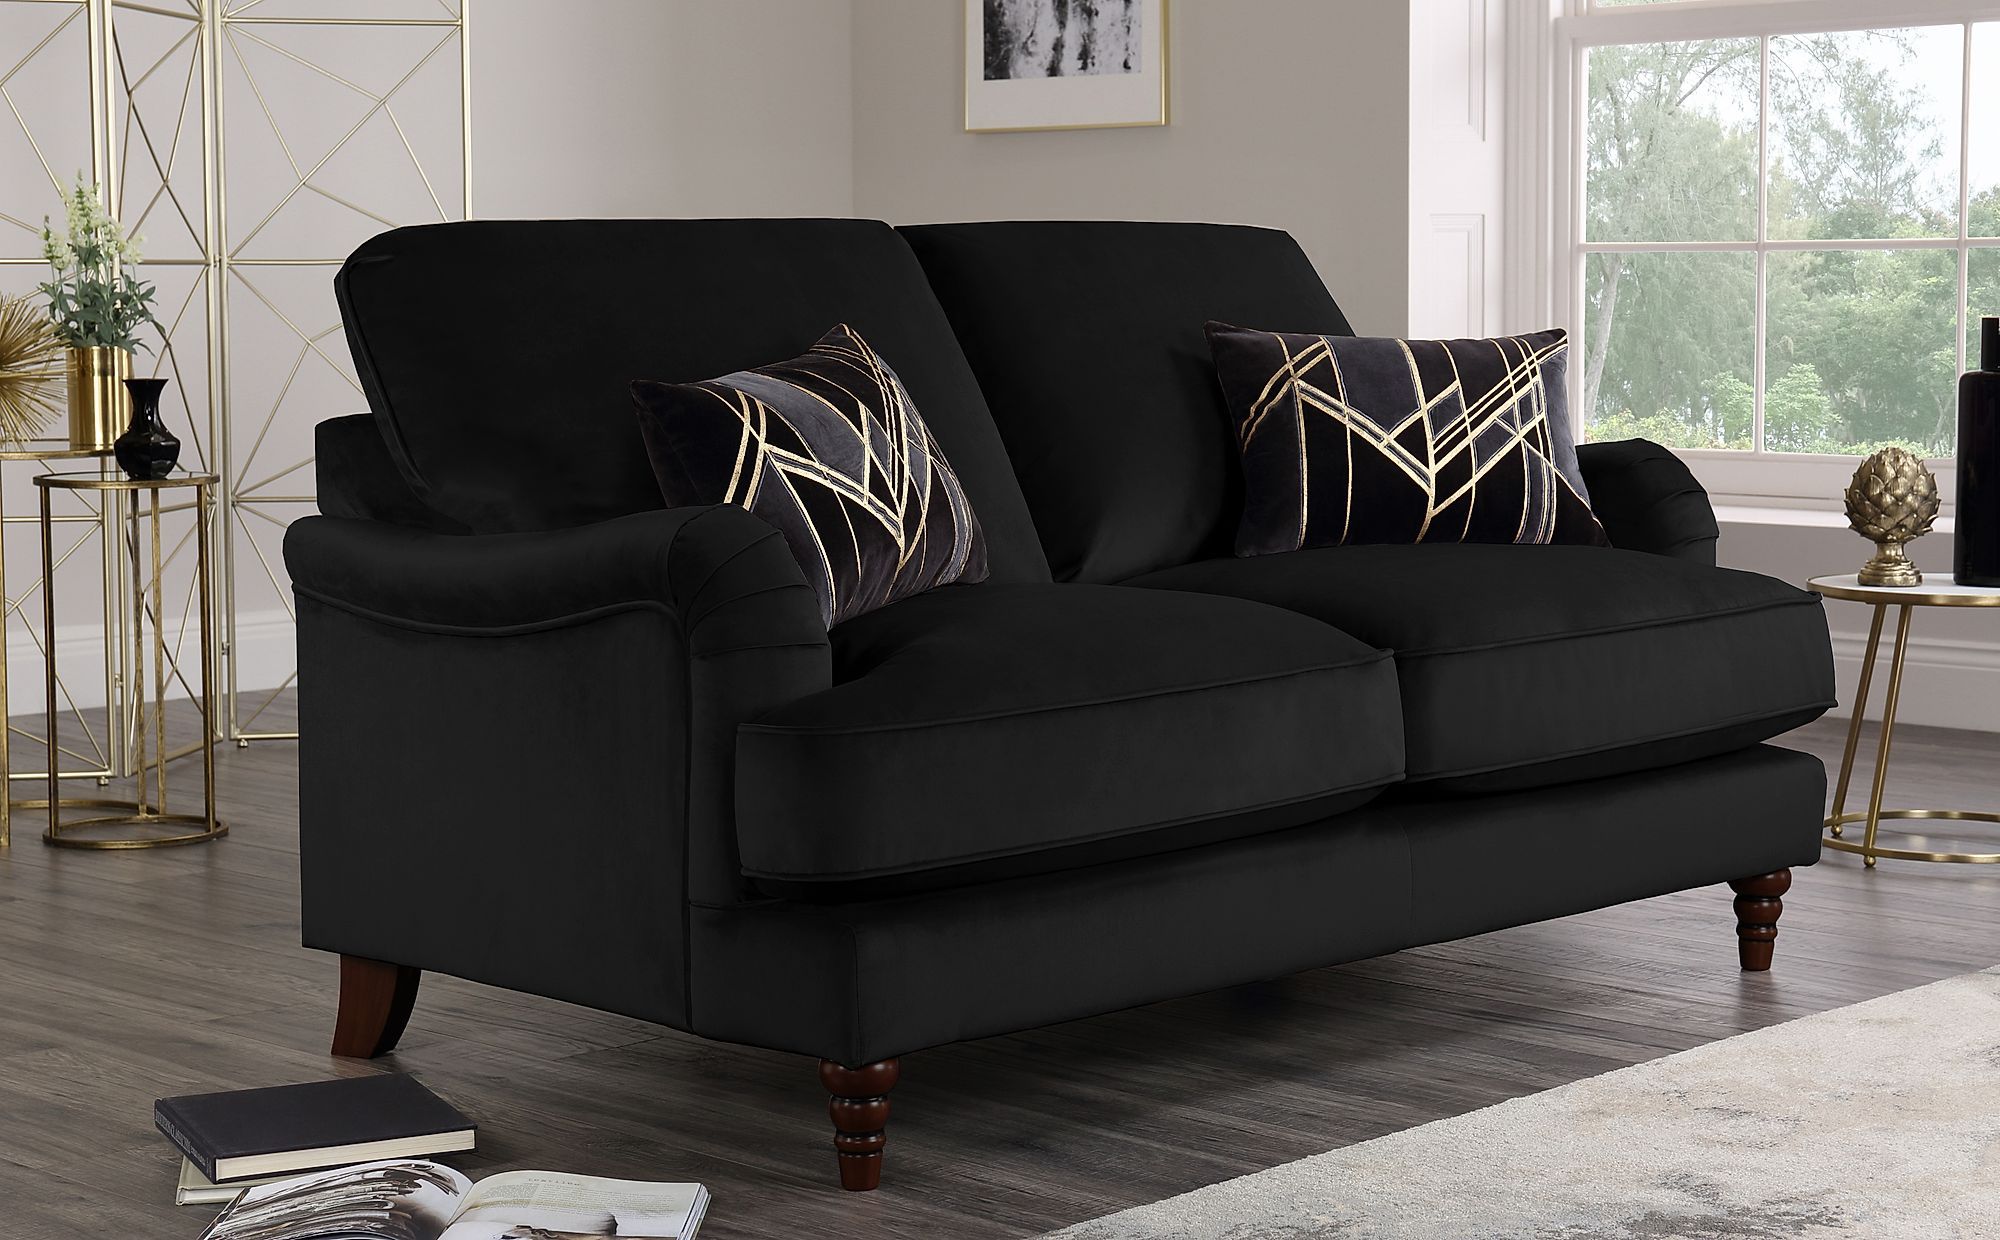 Charleston Black Velvet 2 Seater Sofa | Furniture Choice For 2 Seater Black Velvet Sofa Beds (Gallery 1 of 20)